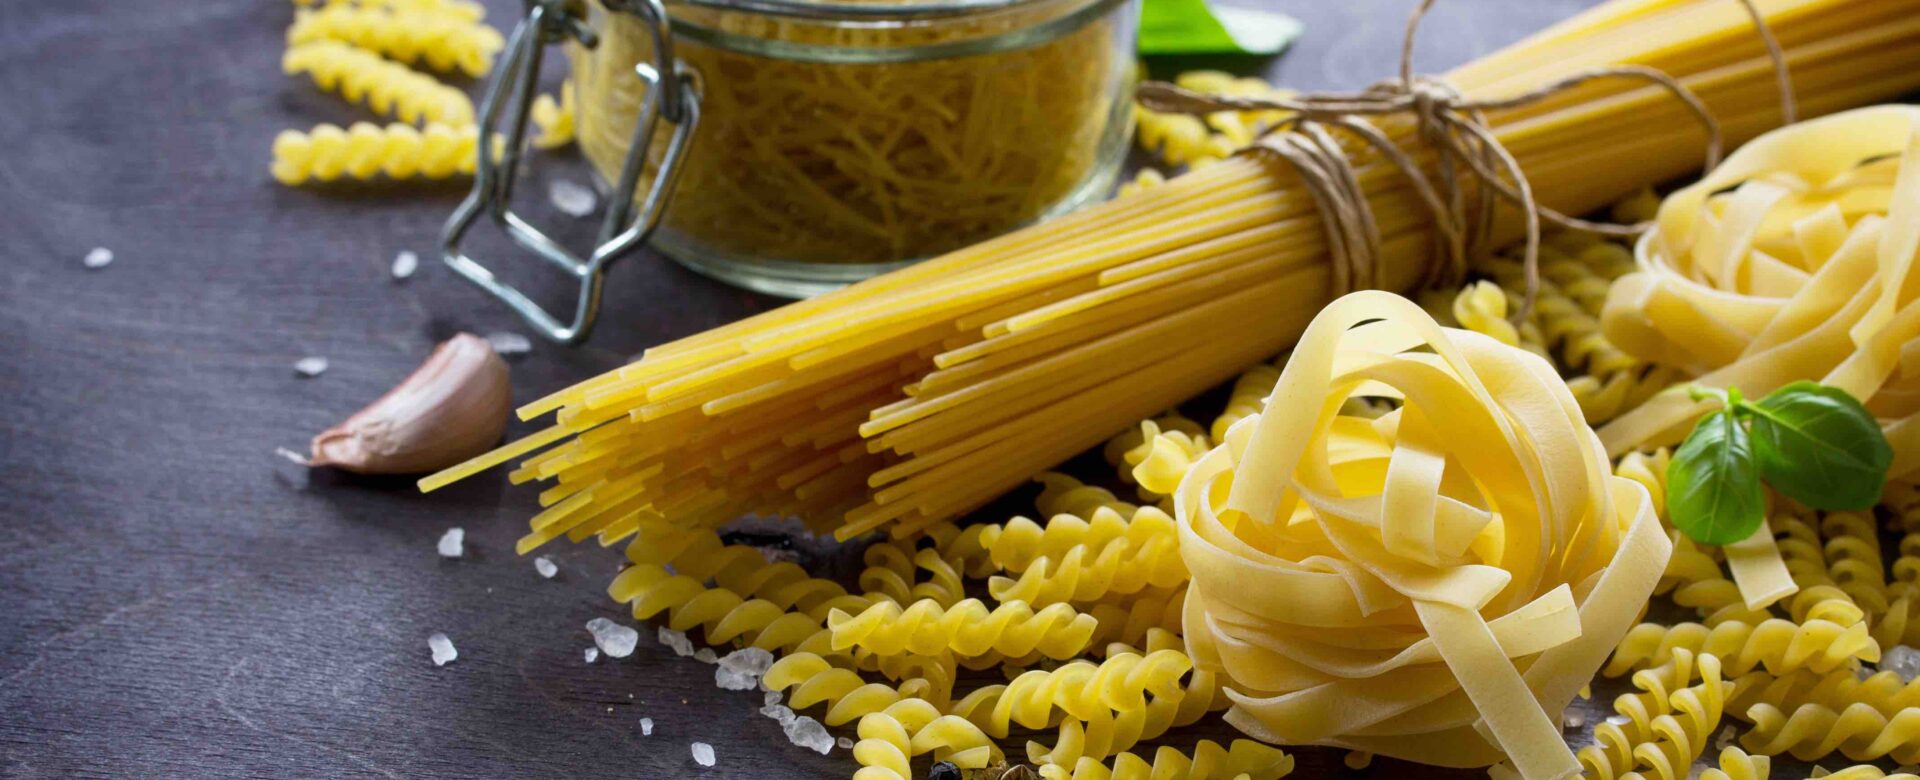 Is spaghetti ook pasta?